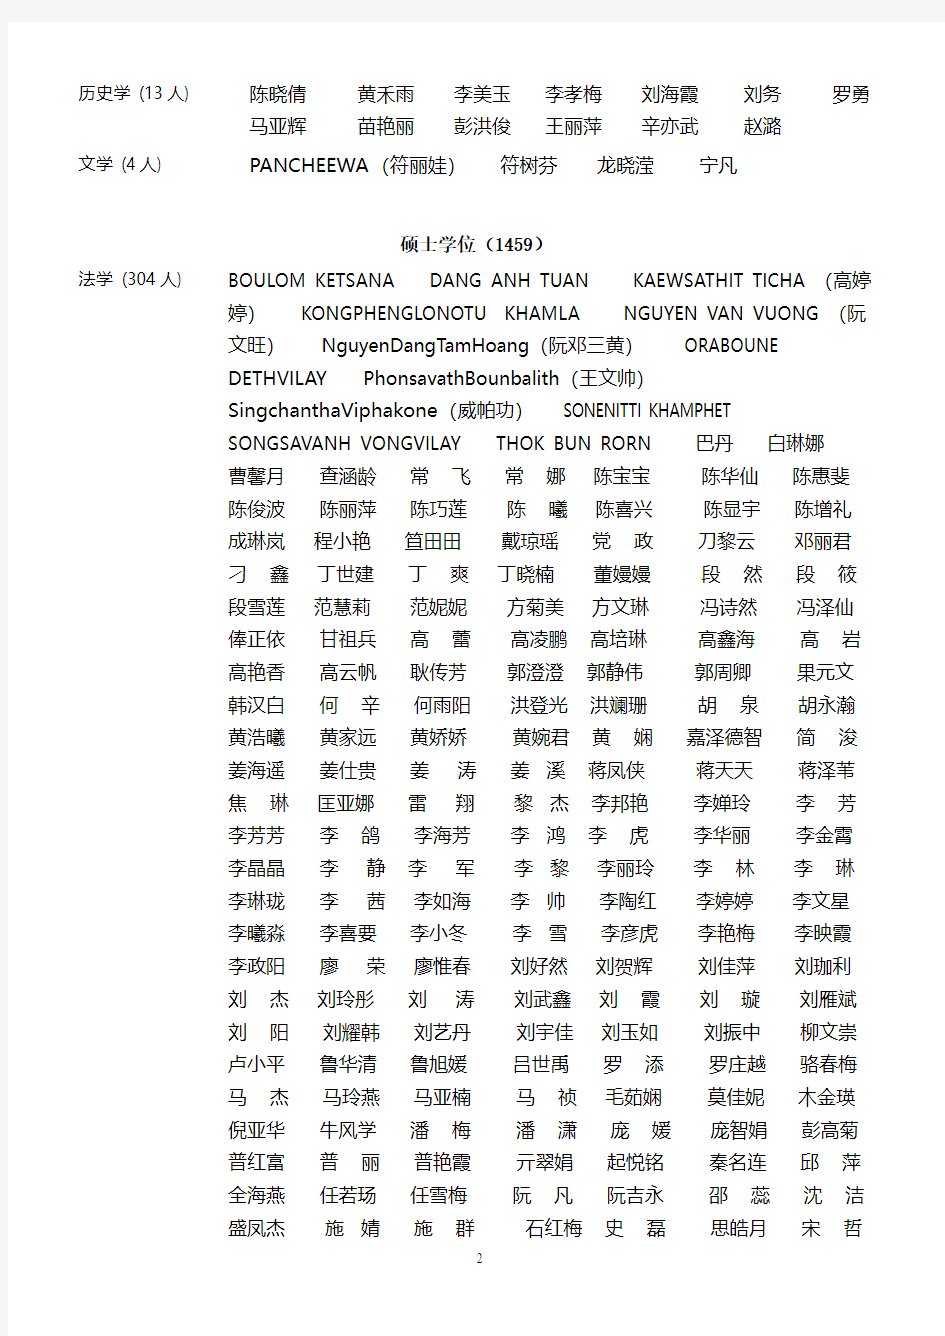 云南大学学位评定委员会学位授予公示